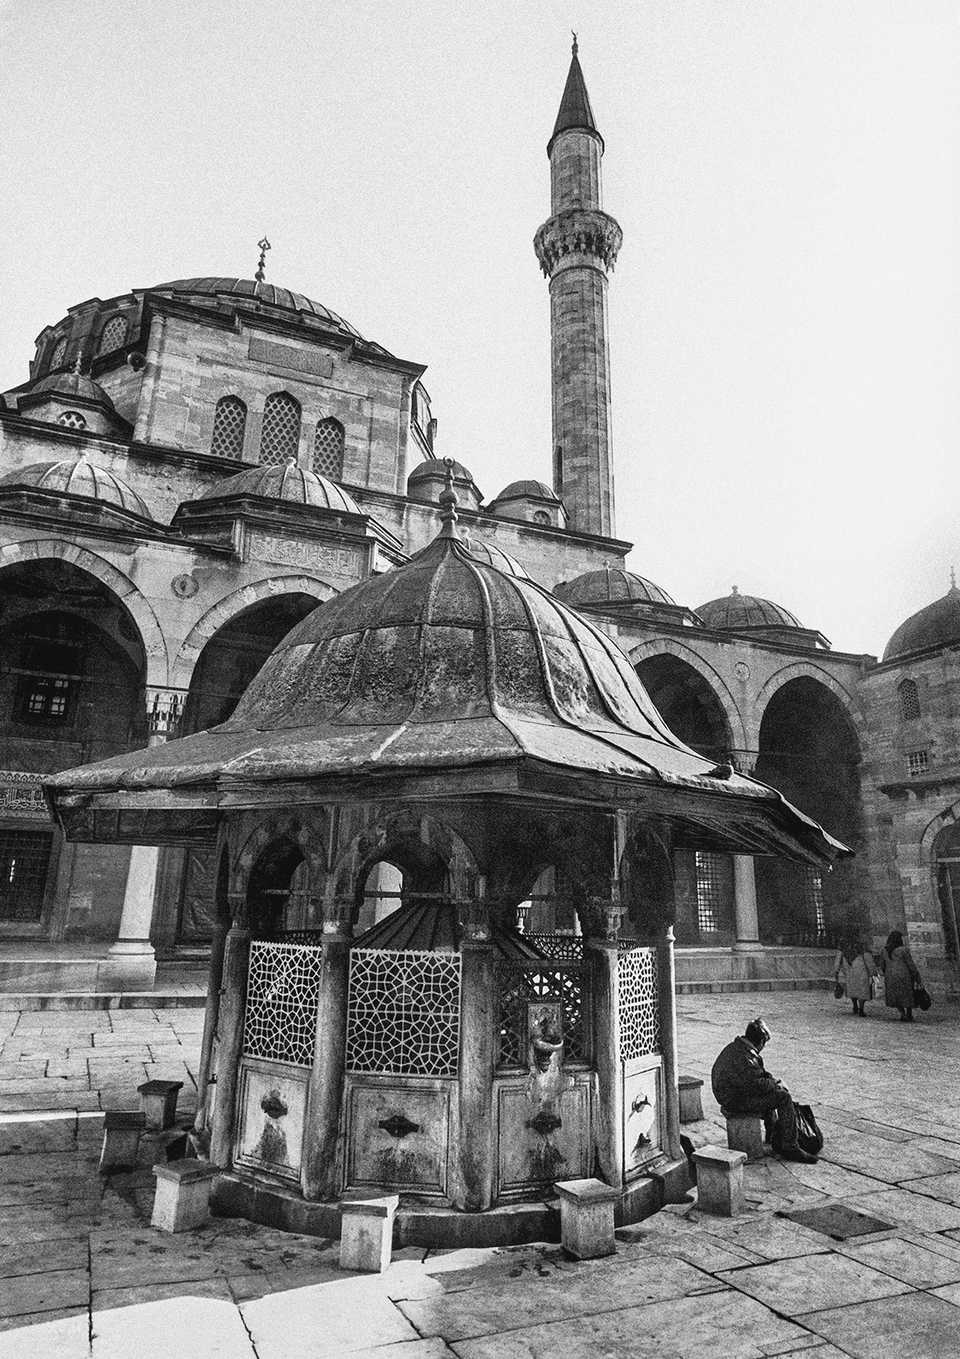 The courtyard and fountain of Sokullu Mehmet Pasha Mosque, Kadirga, 1988.